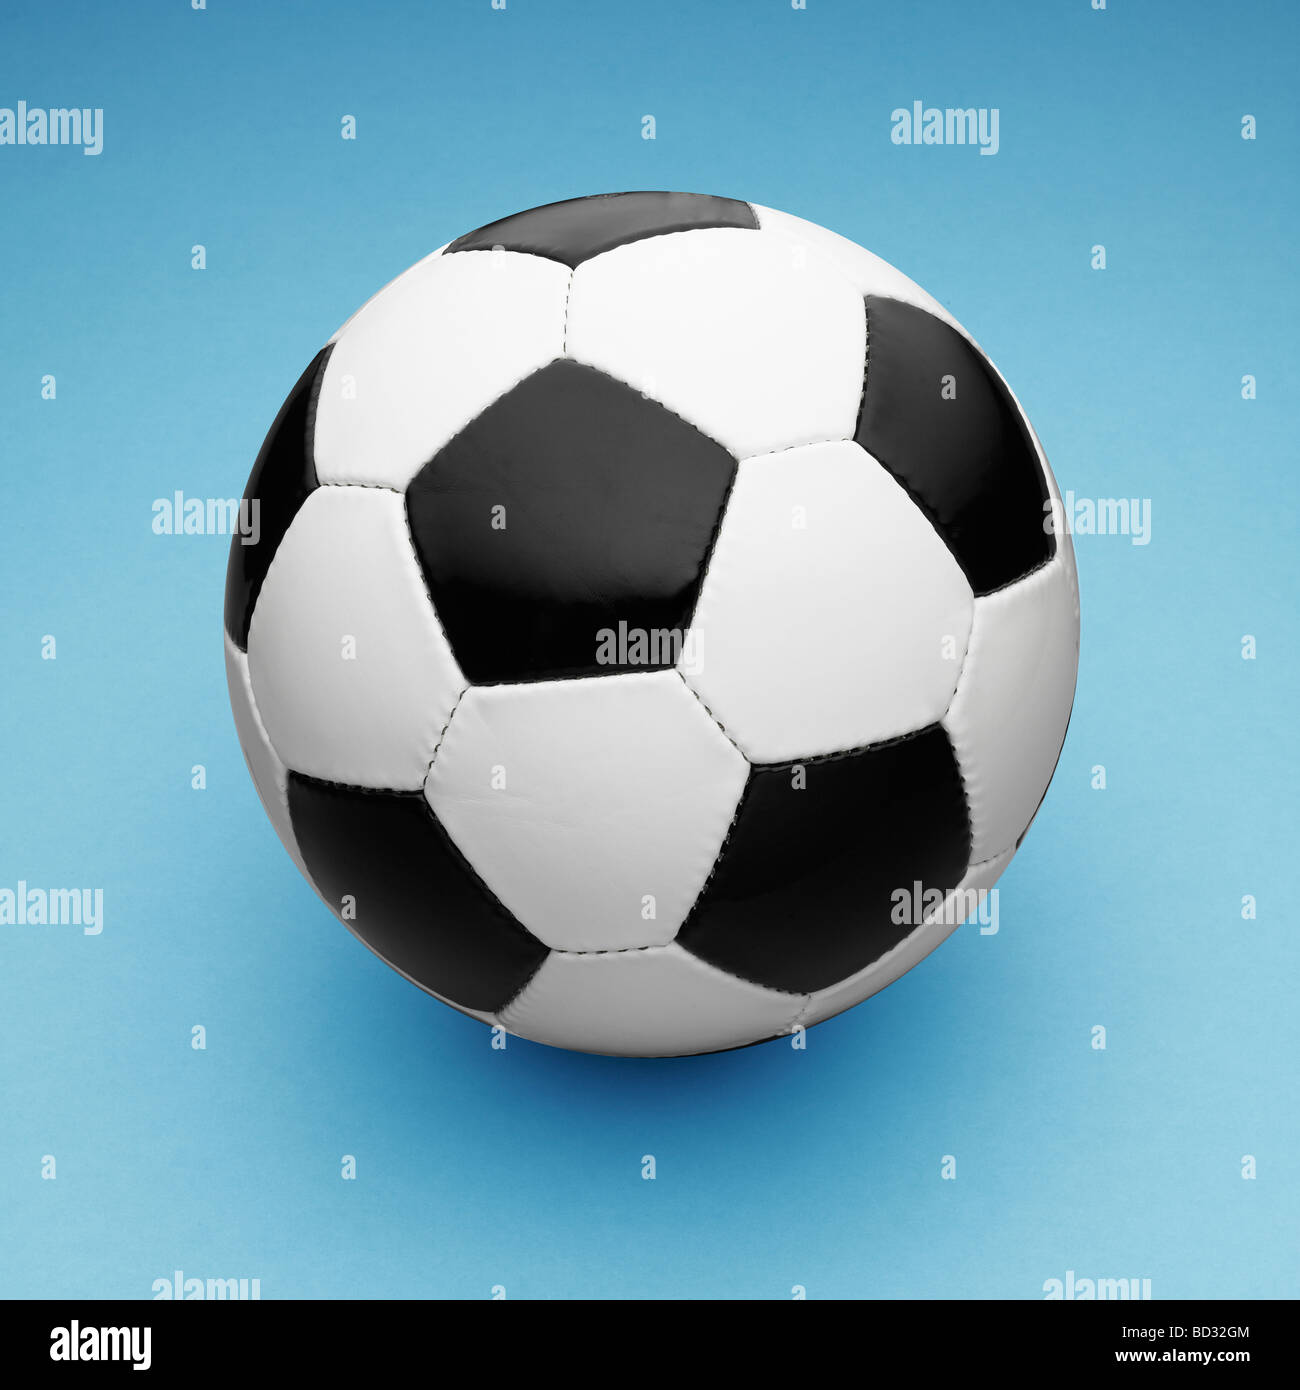 Cuir noir et blanc ballon de soccer / football sur fond bleu. Banque D'Images